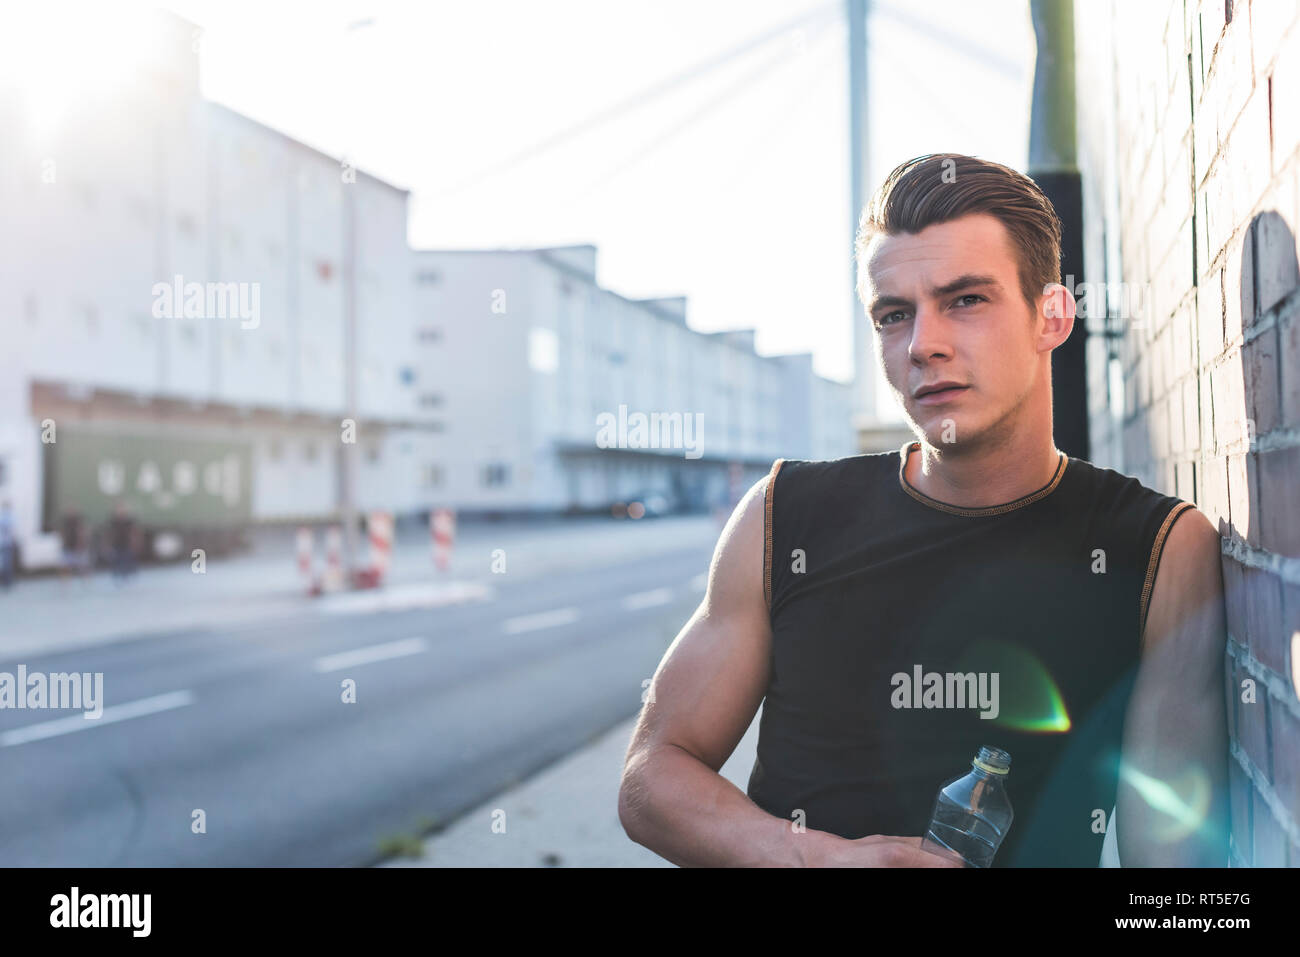 Germania, Mannheim, giovane atleta nella città con una bottiglia di acqua minerale, ritratto Foto Stock